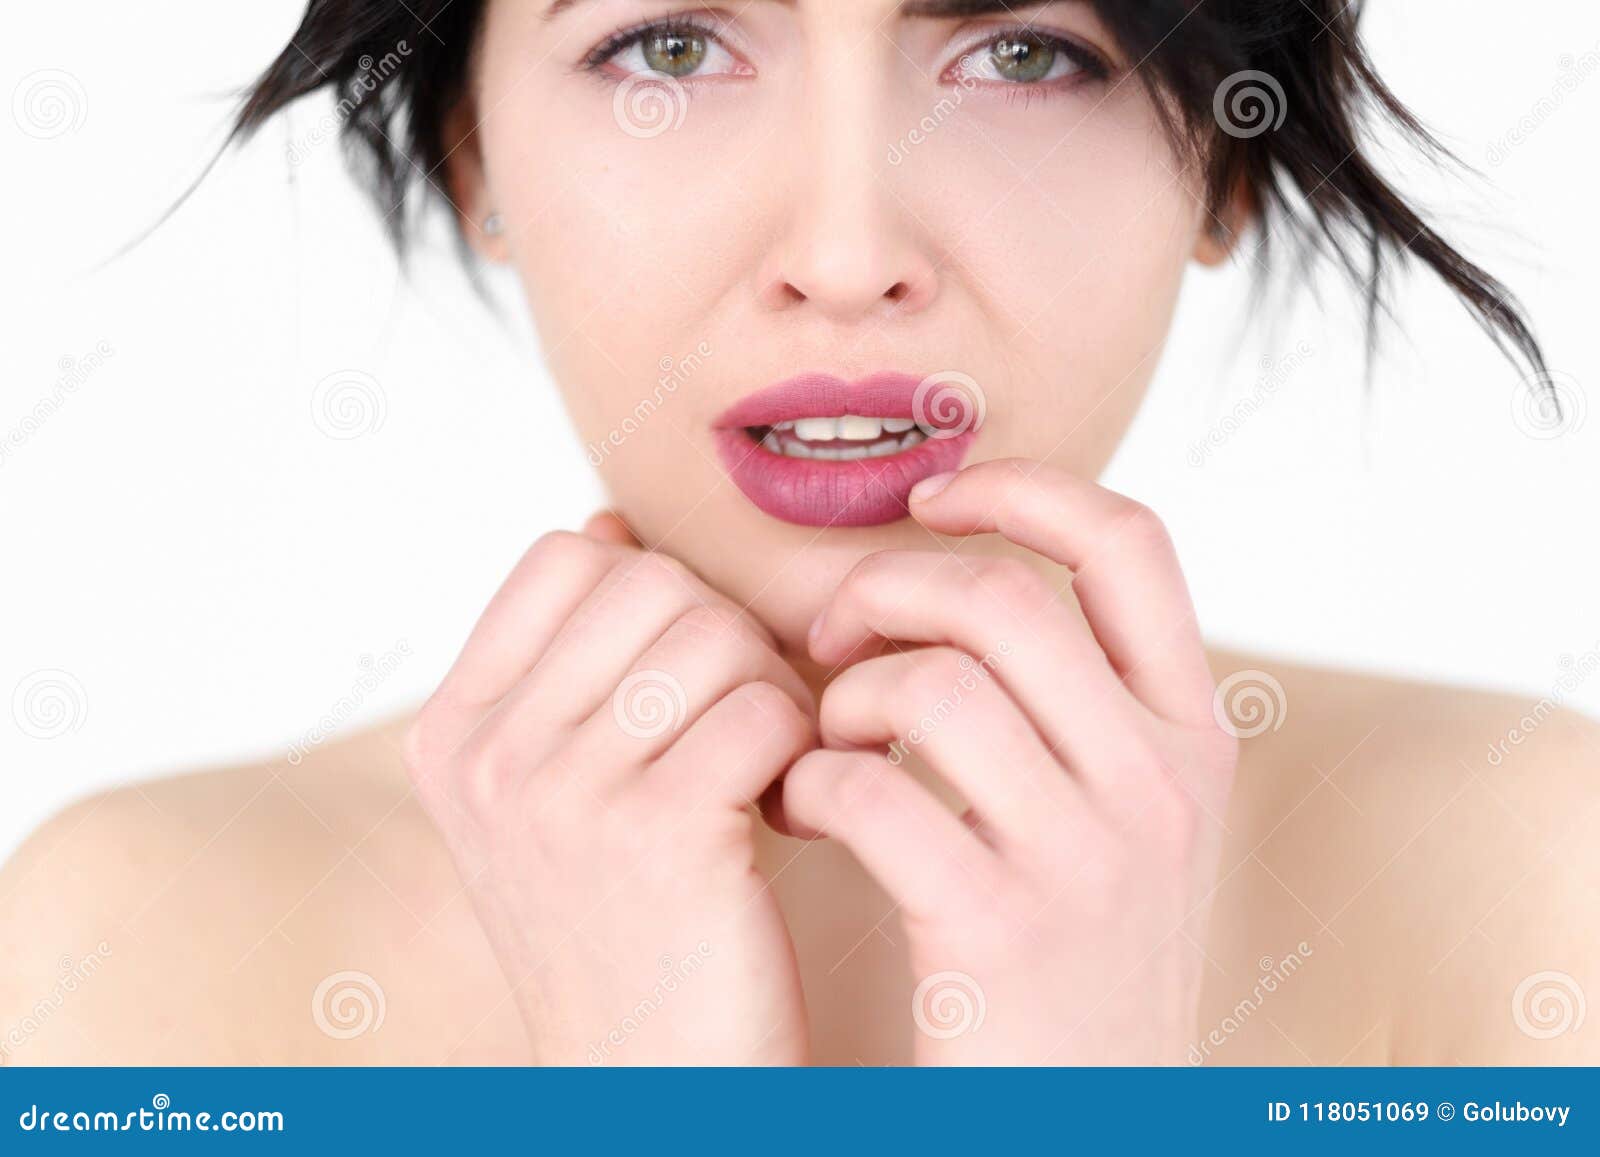 Emotion Face Sad Worried Upset Crying Woman Stock Image